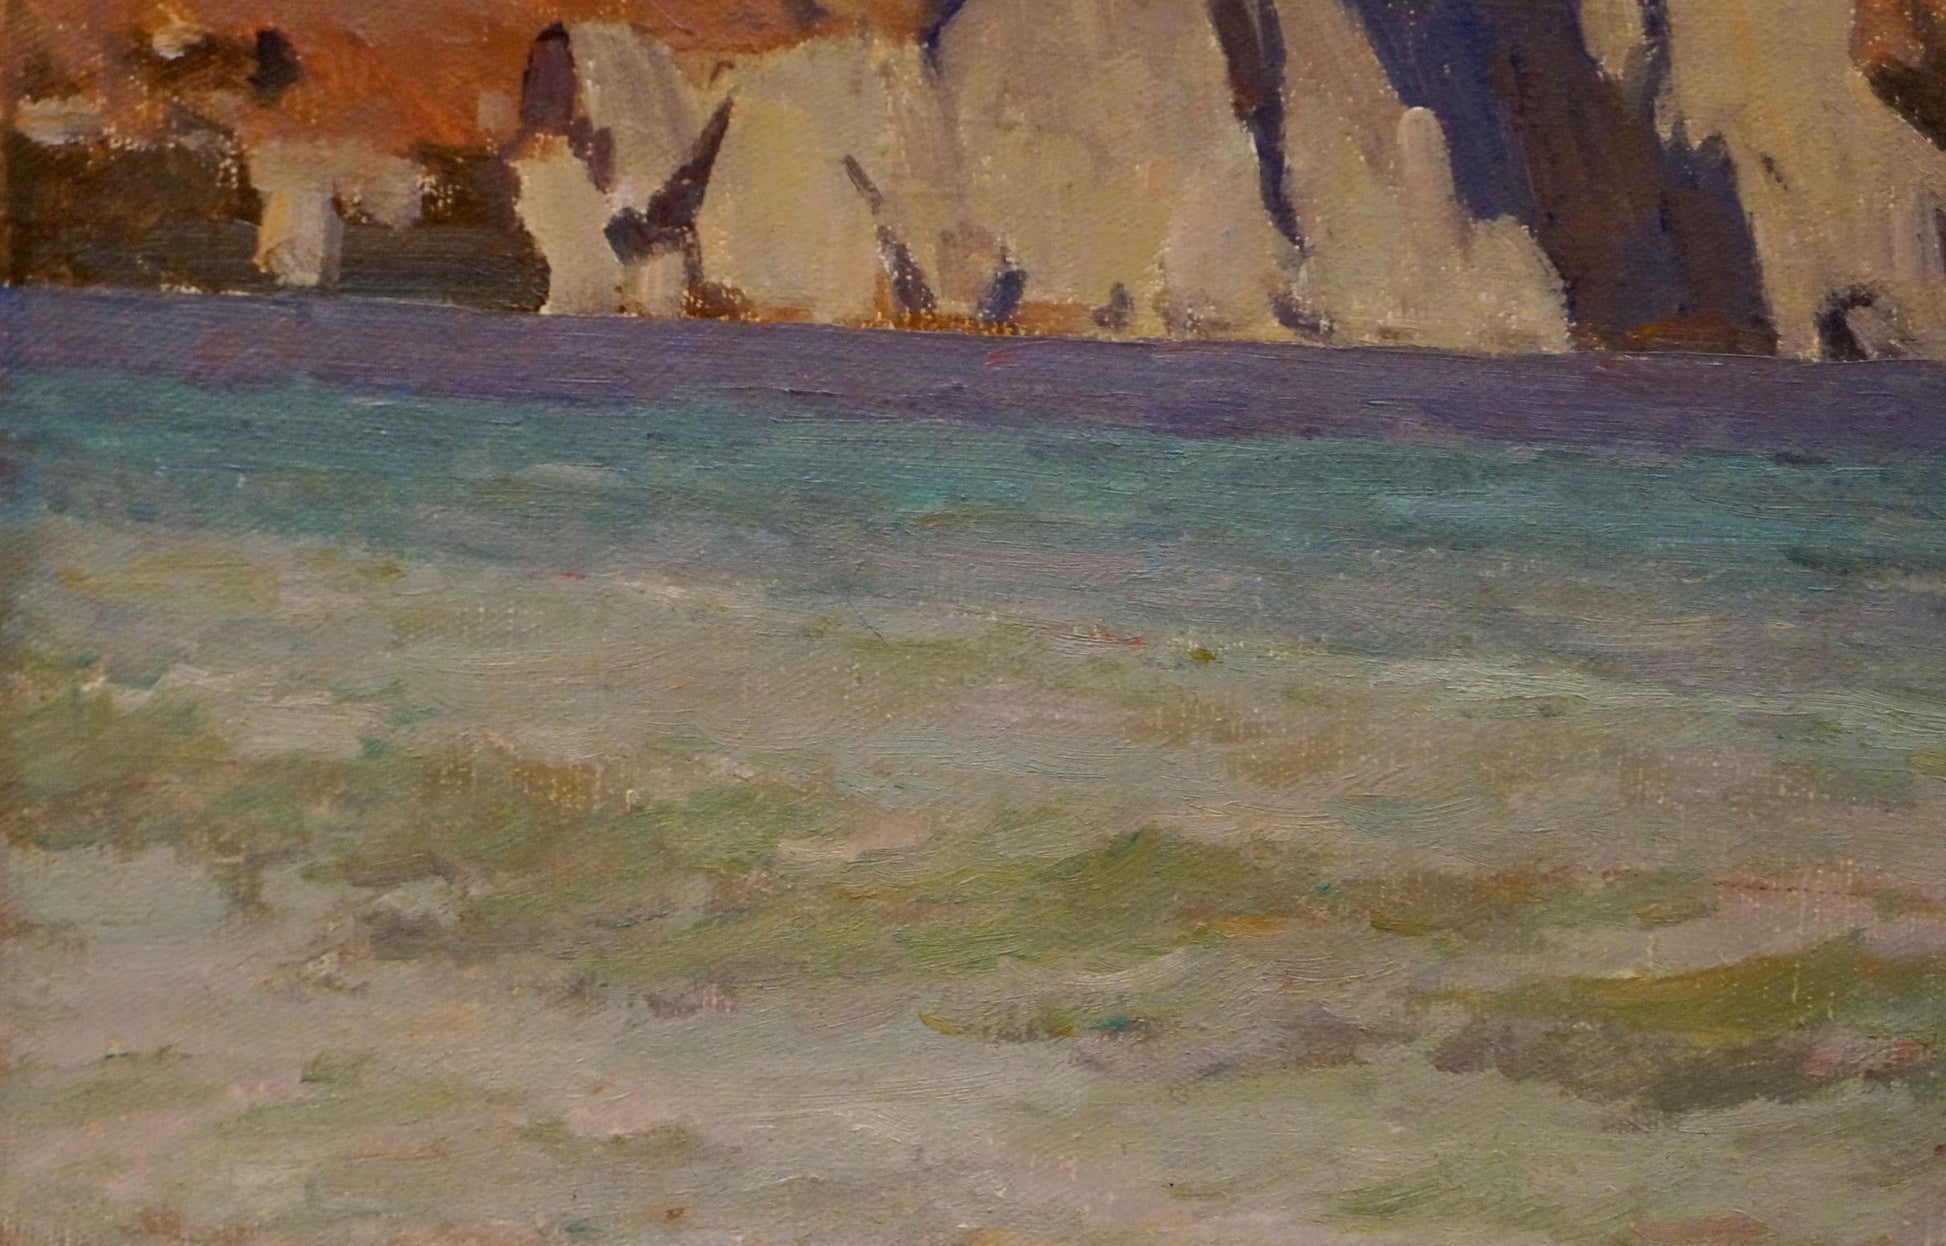 Rocky Coast: an oil painting by Nikolay Vladimirovich Chernikov